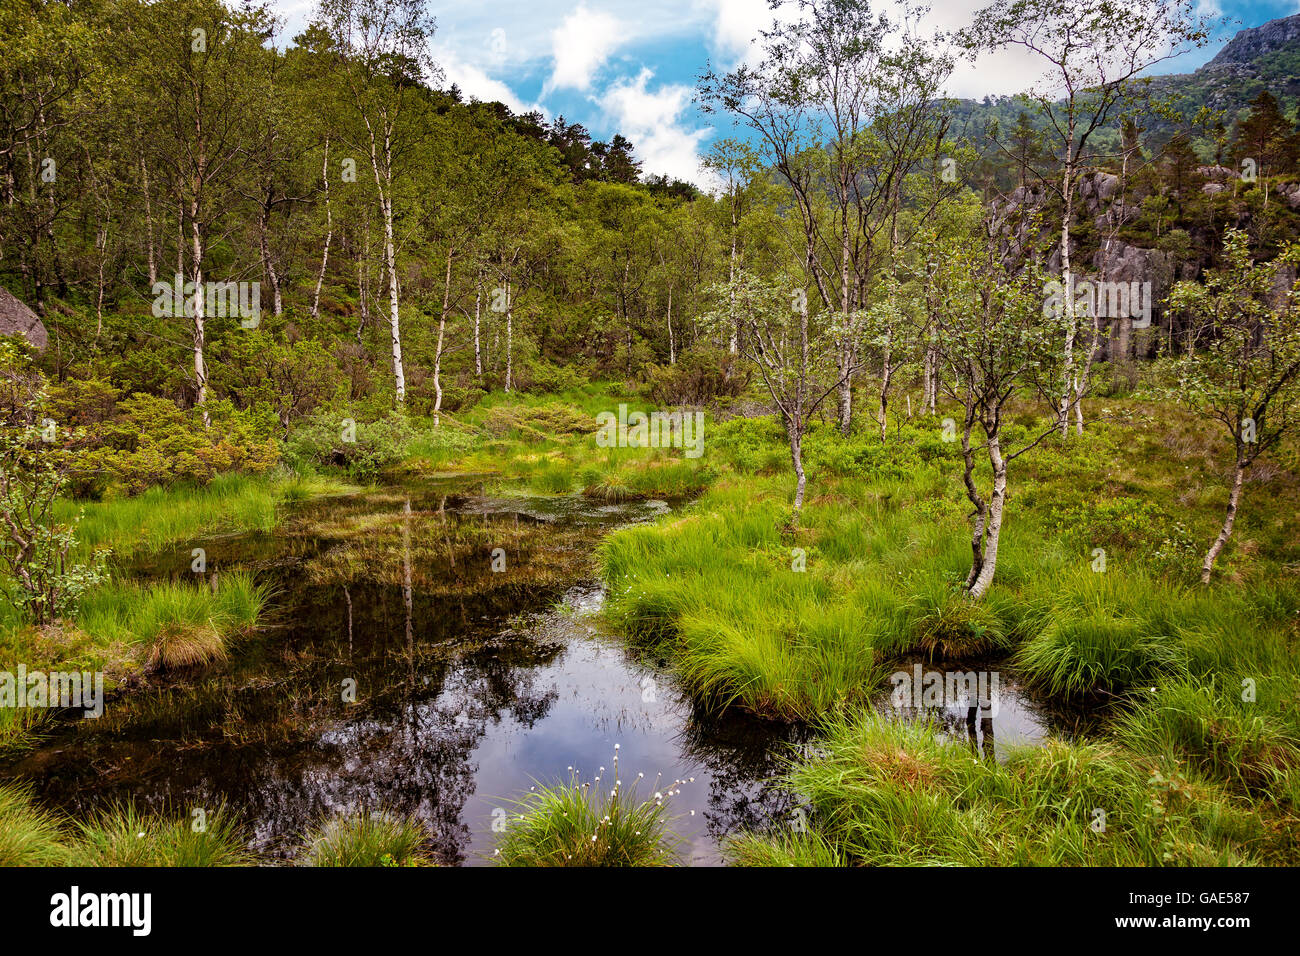 Norvège - paysage avec scène de marais en forêt. Banque D'Images